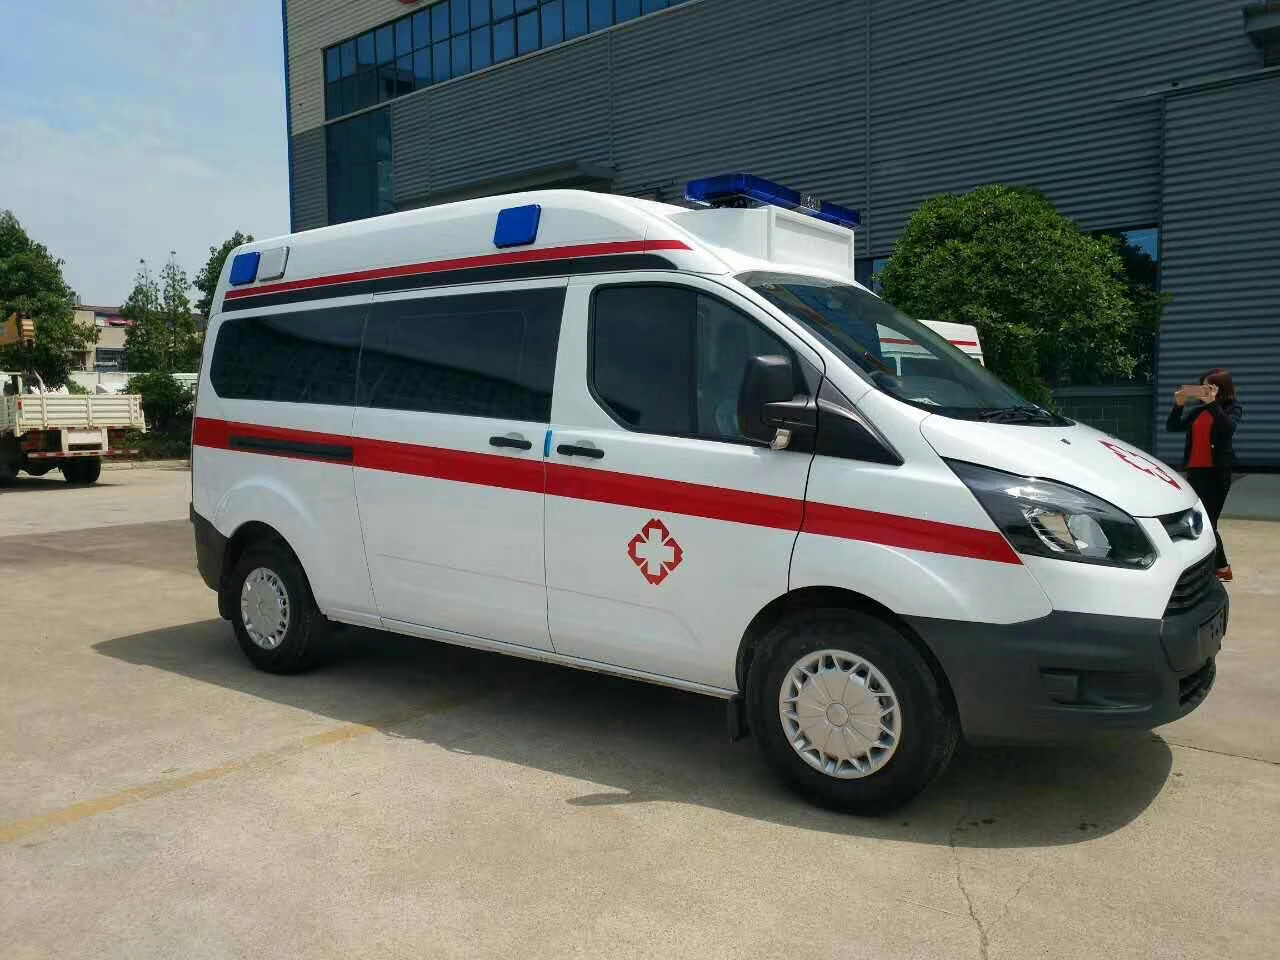 平阴县出院转院救护车